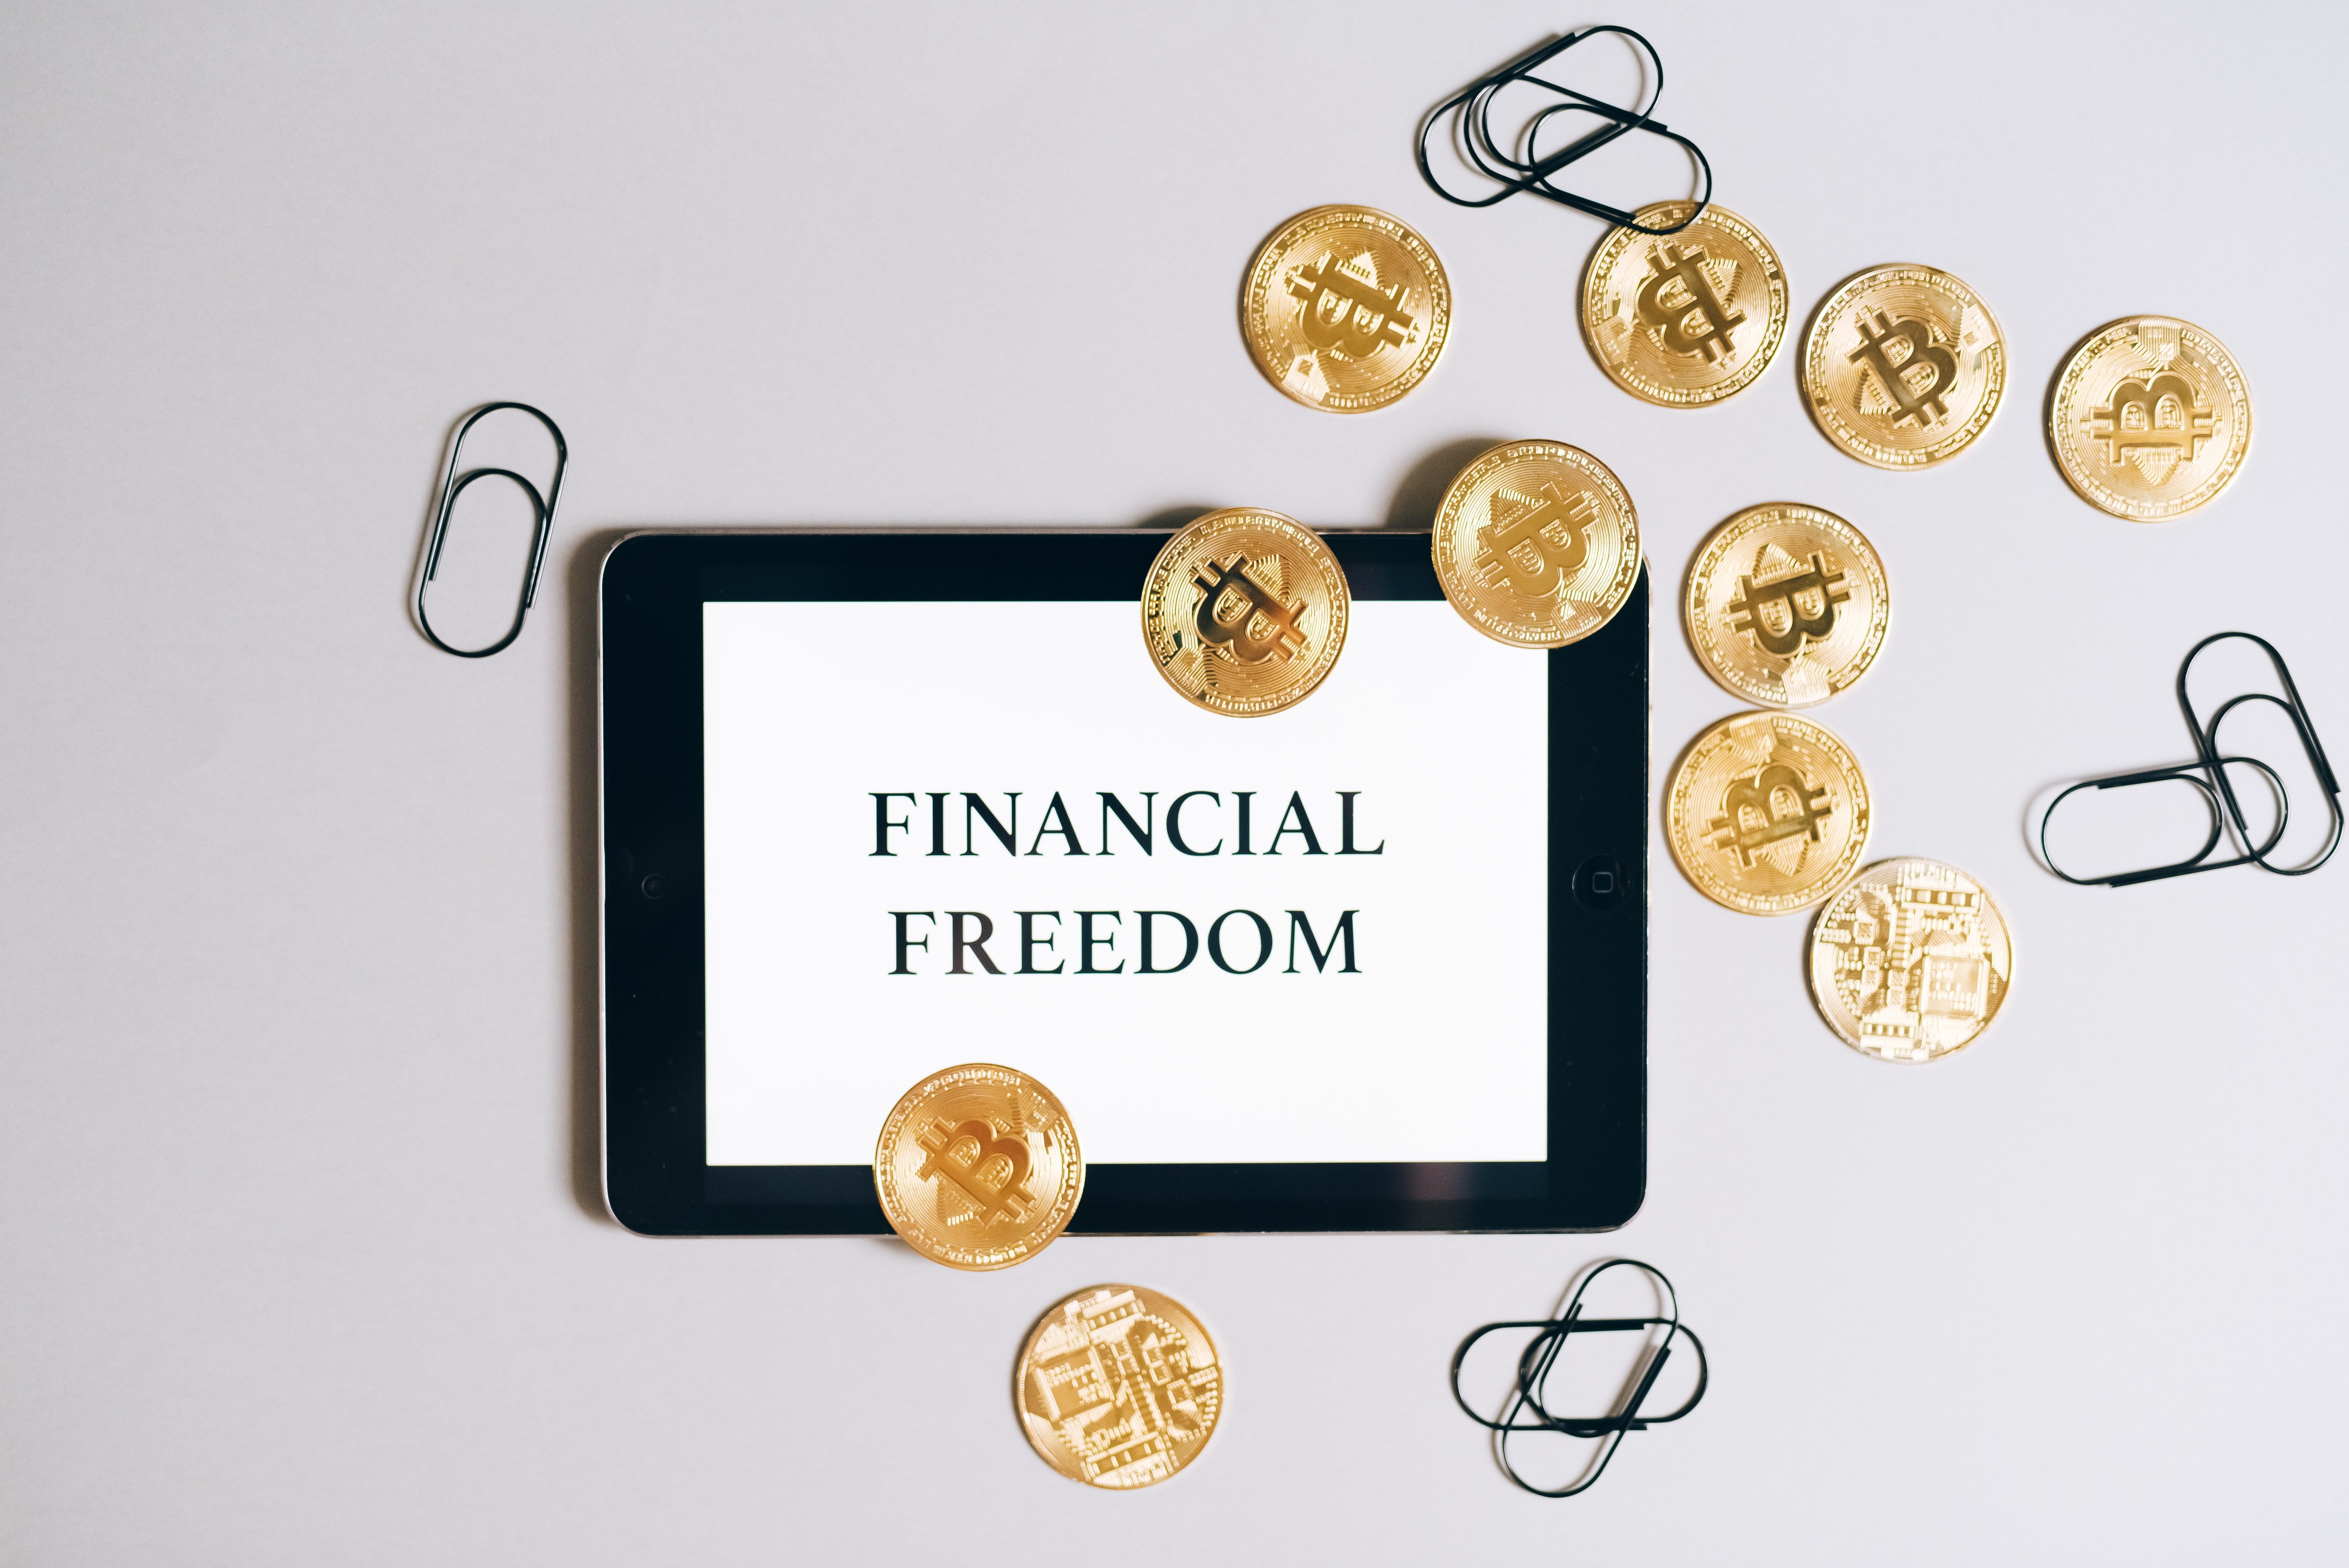 How do you attain financial freedom?